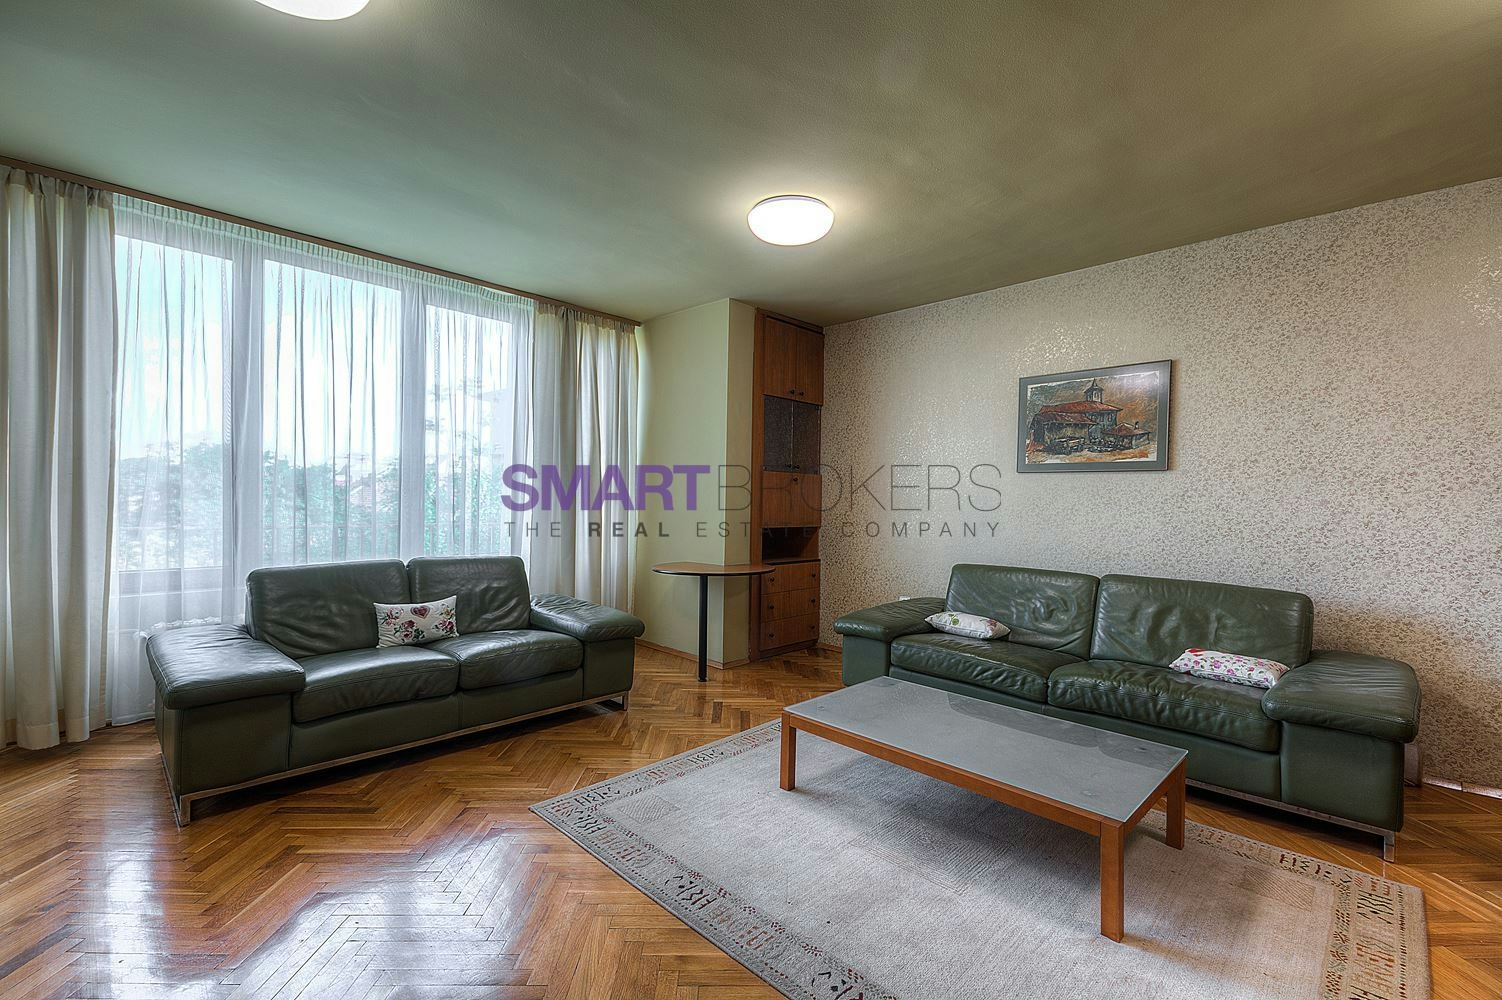 Тристаен апартамент в отлично поддържана сграда в центъра на София 